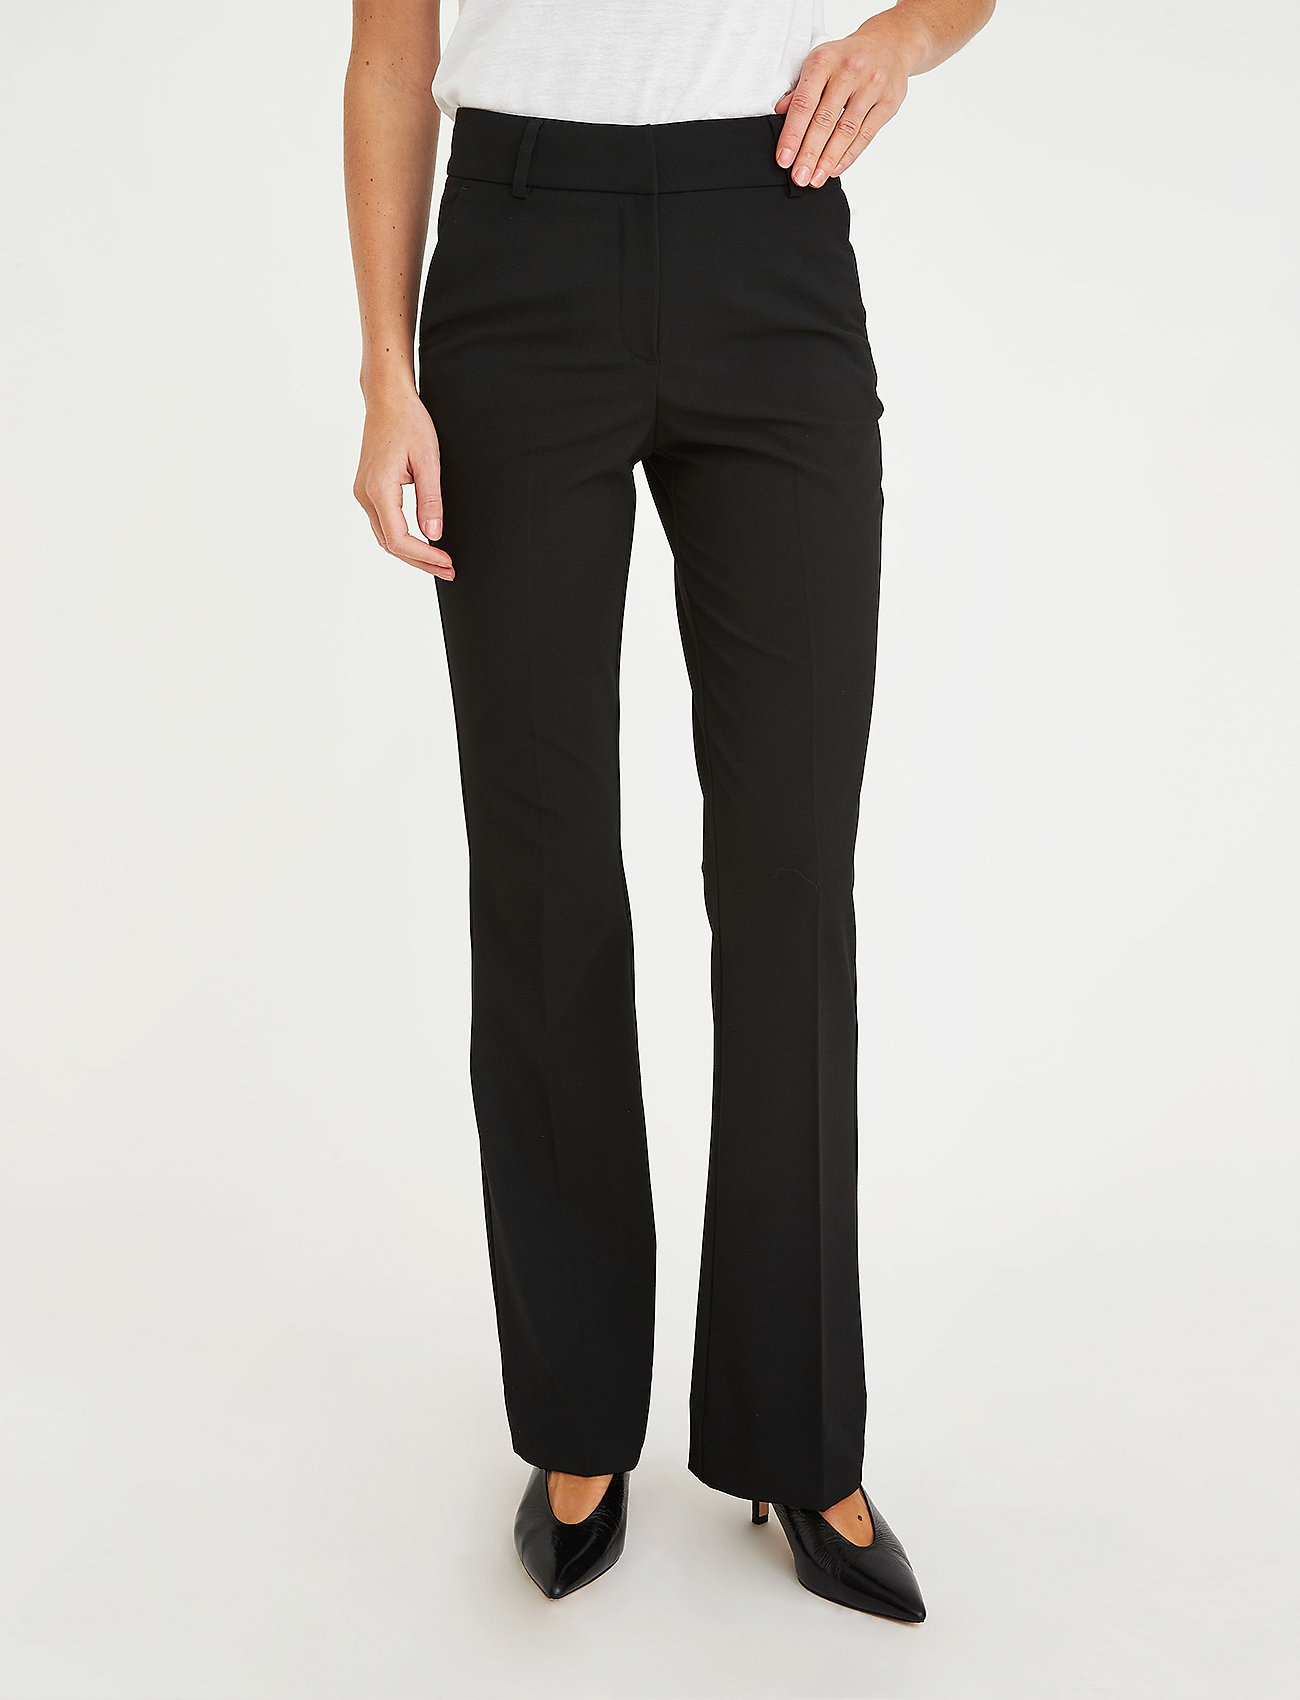 FIVEUNITS Clara 285 Black Glow - Slim fit trousers | Boozt.com